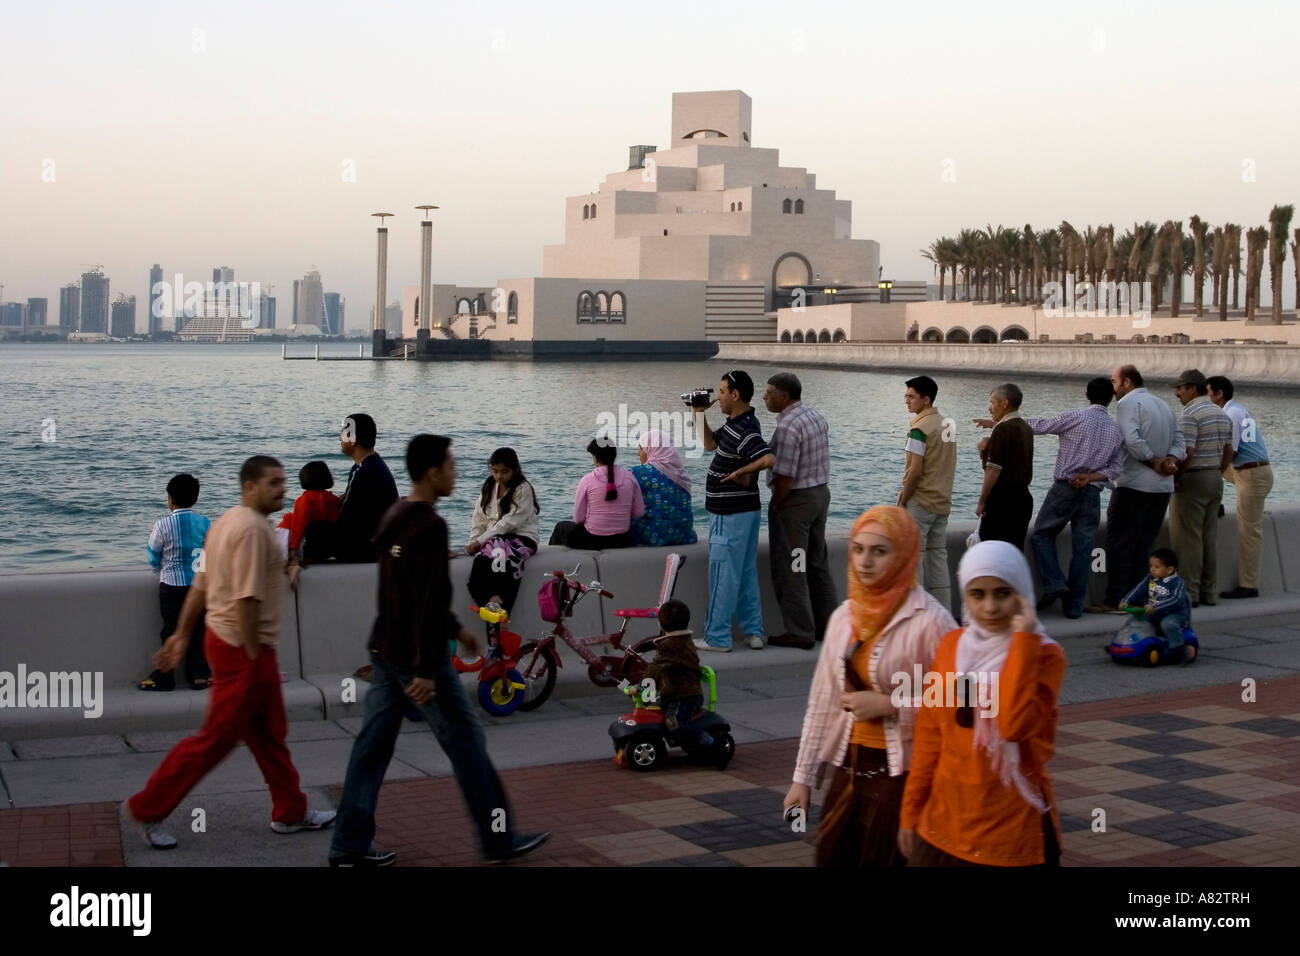 Il museo di arte islamica dal famoso architetto io m. Pei al lungomare di Doha corniche Foto Stock